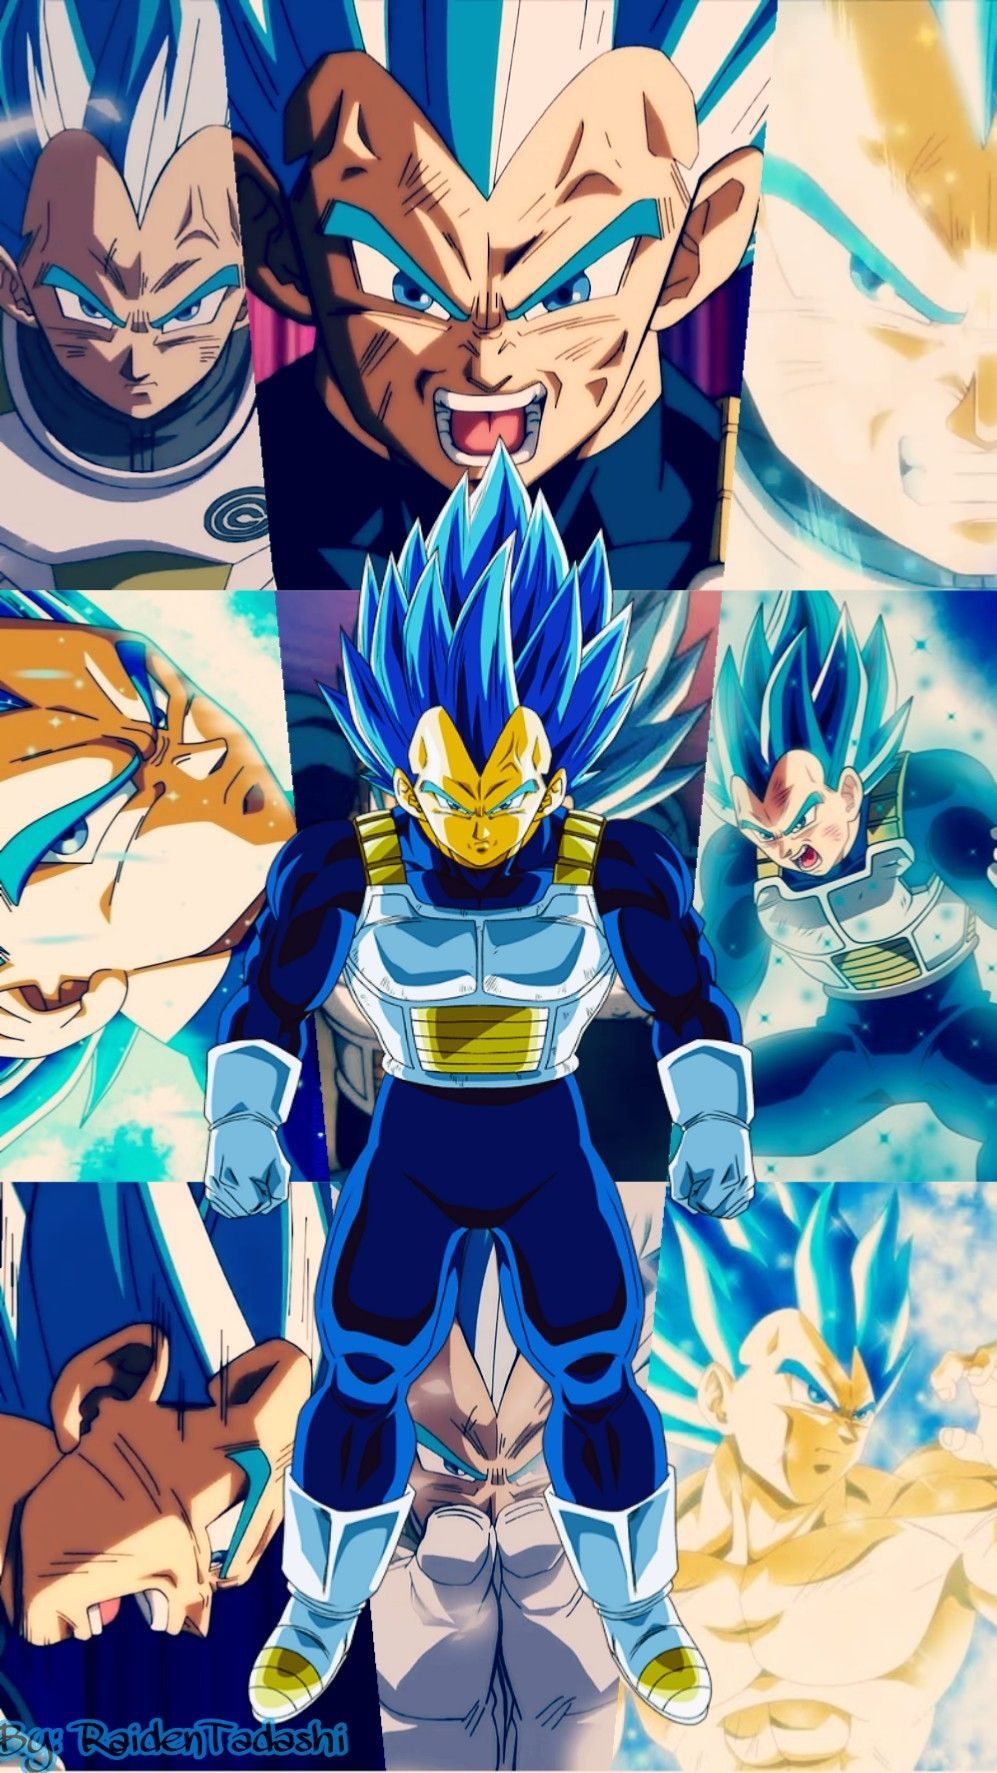 Vegeta blue Evolution Wallpaper. Anime dragon ball super, Dragon ball super artwork, Dragon ball artwork